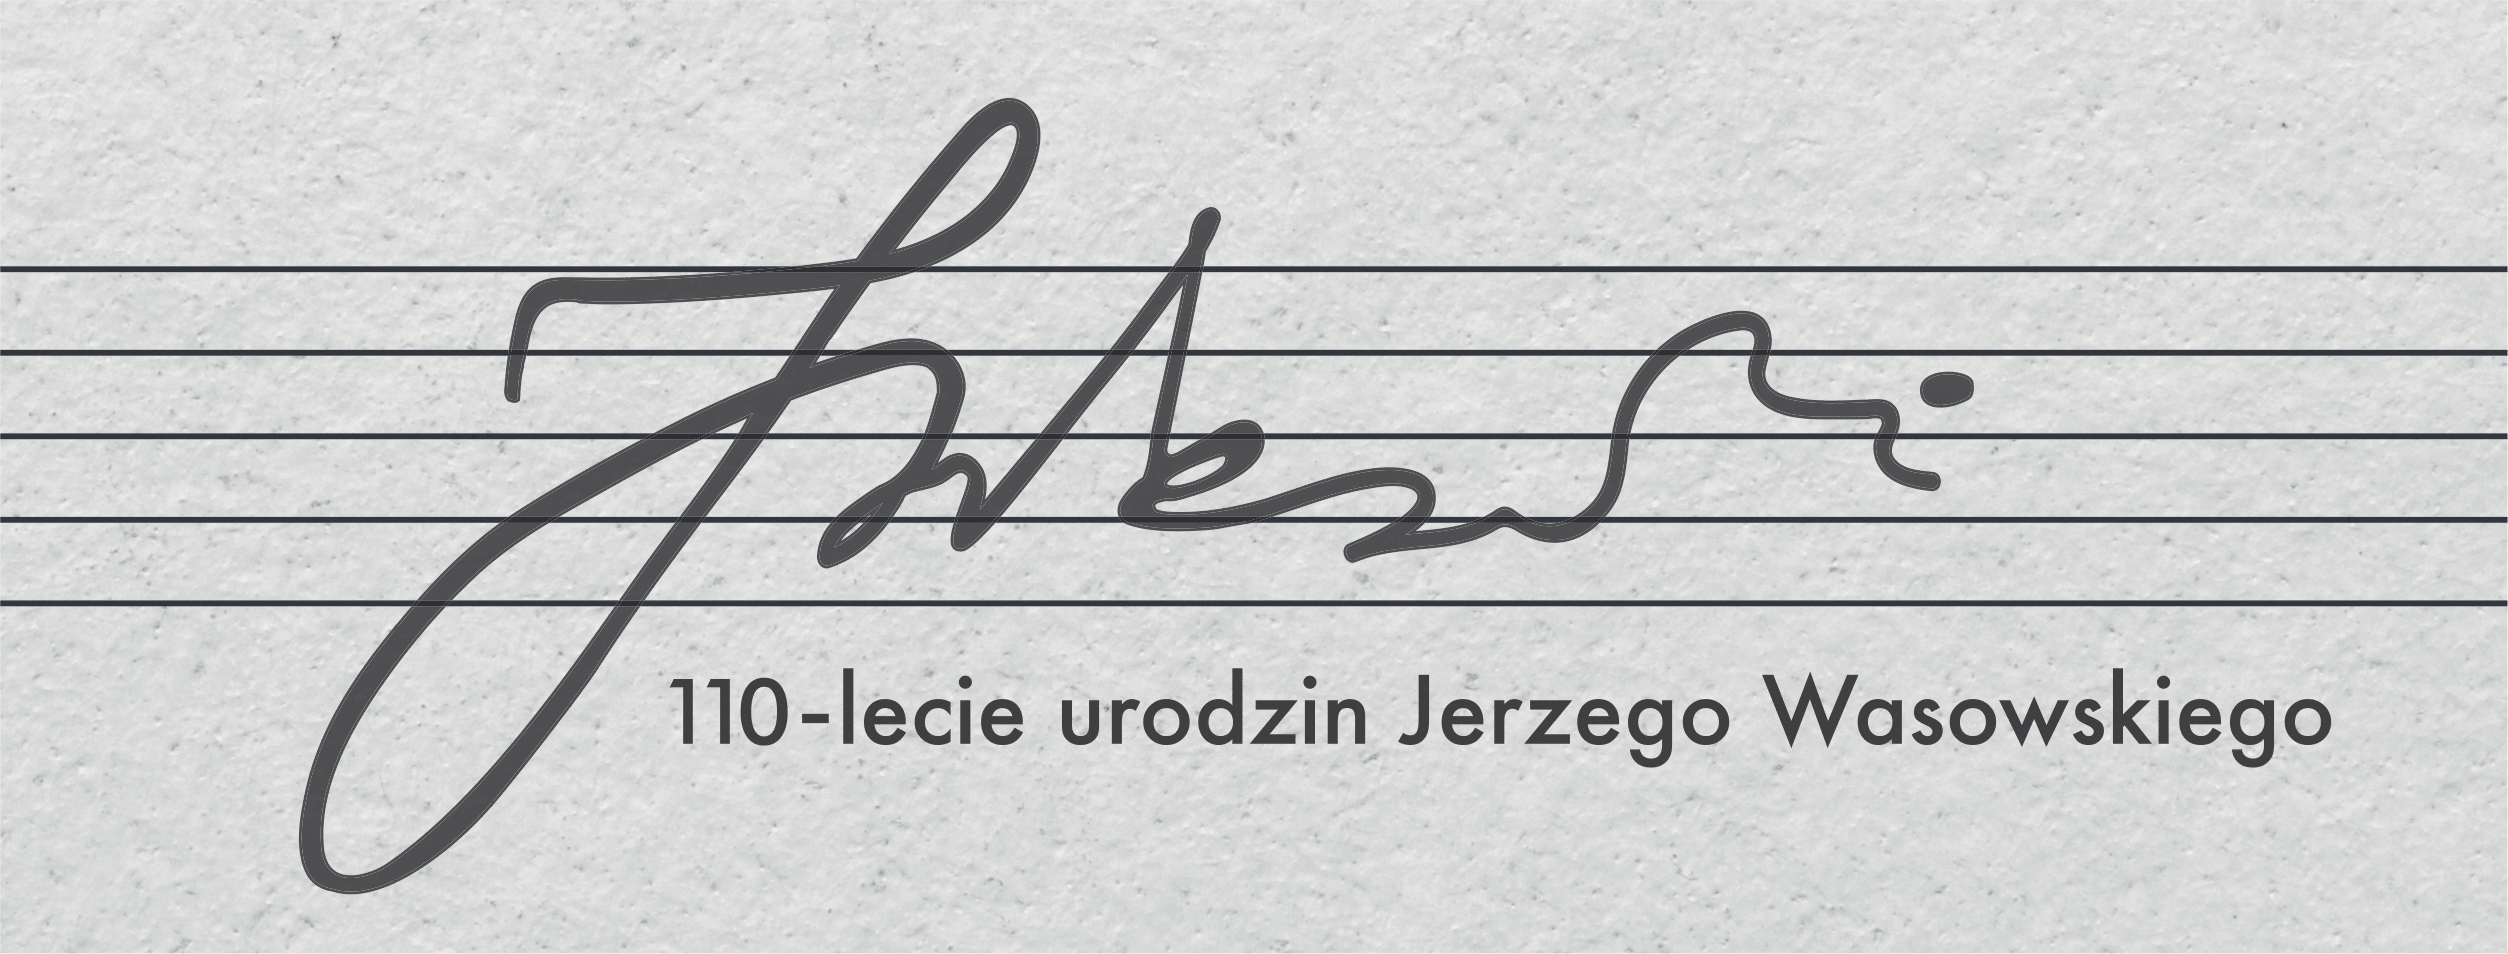 110 rocznica urodzin Jerzego Wasowskiego